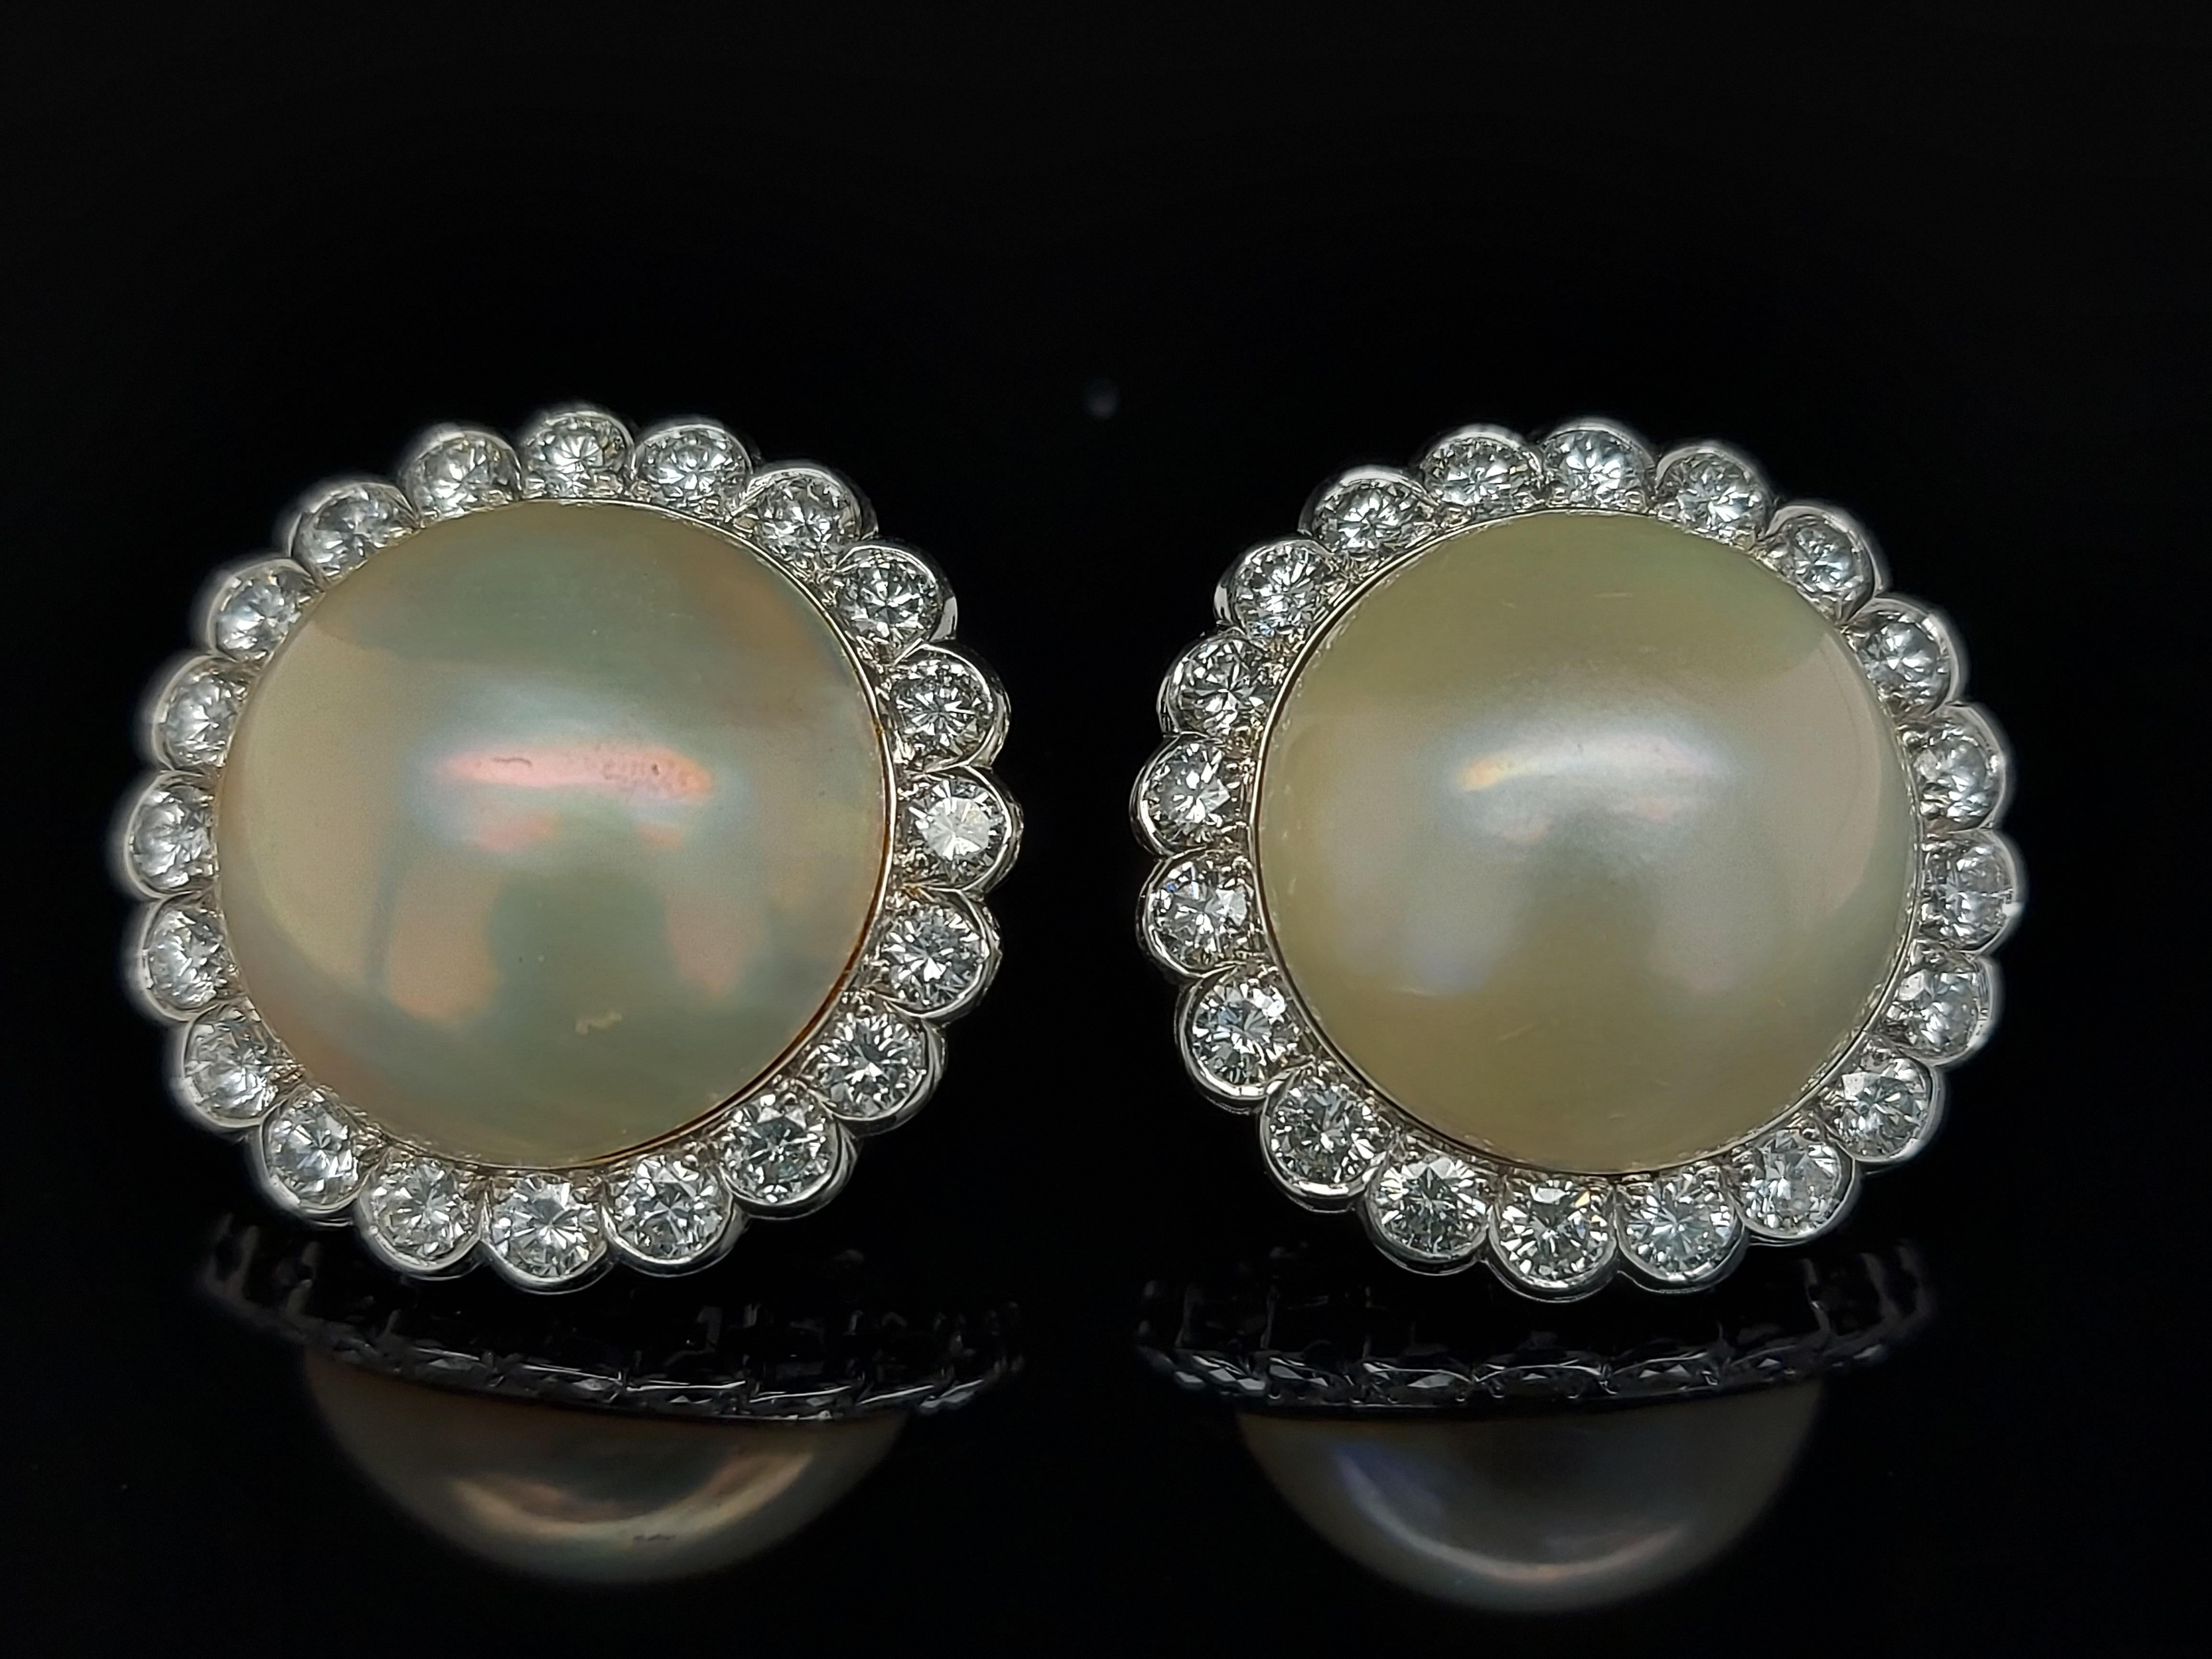 Superbe perle Mabe en or blanc 18Kt  Boucles d'oreilles à clip entourées de diamants.

Perle : Diamètre 16,7 mm

Diamants : 40 diamants ronds taille brillant : 2,8 ct Diamants taille brillant de qualité supérieure.

Matériau : or blanc 18kt.

Poids